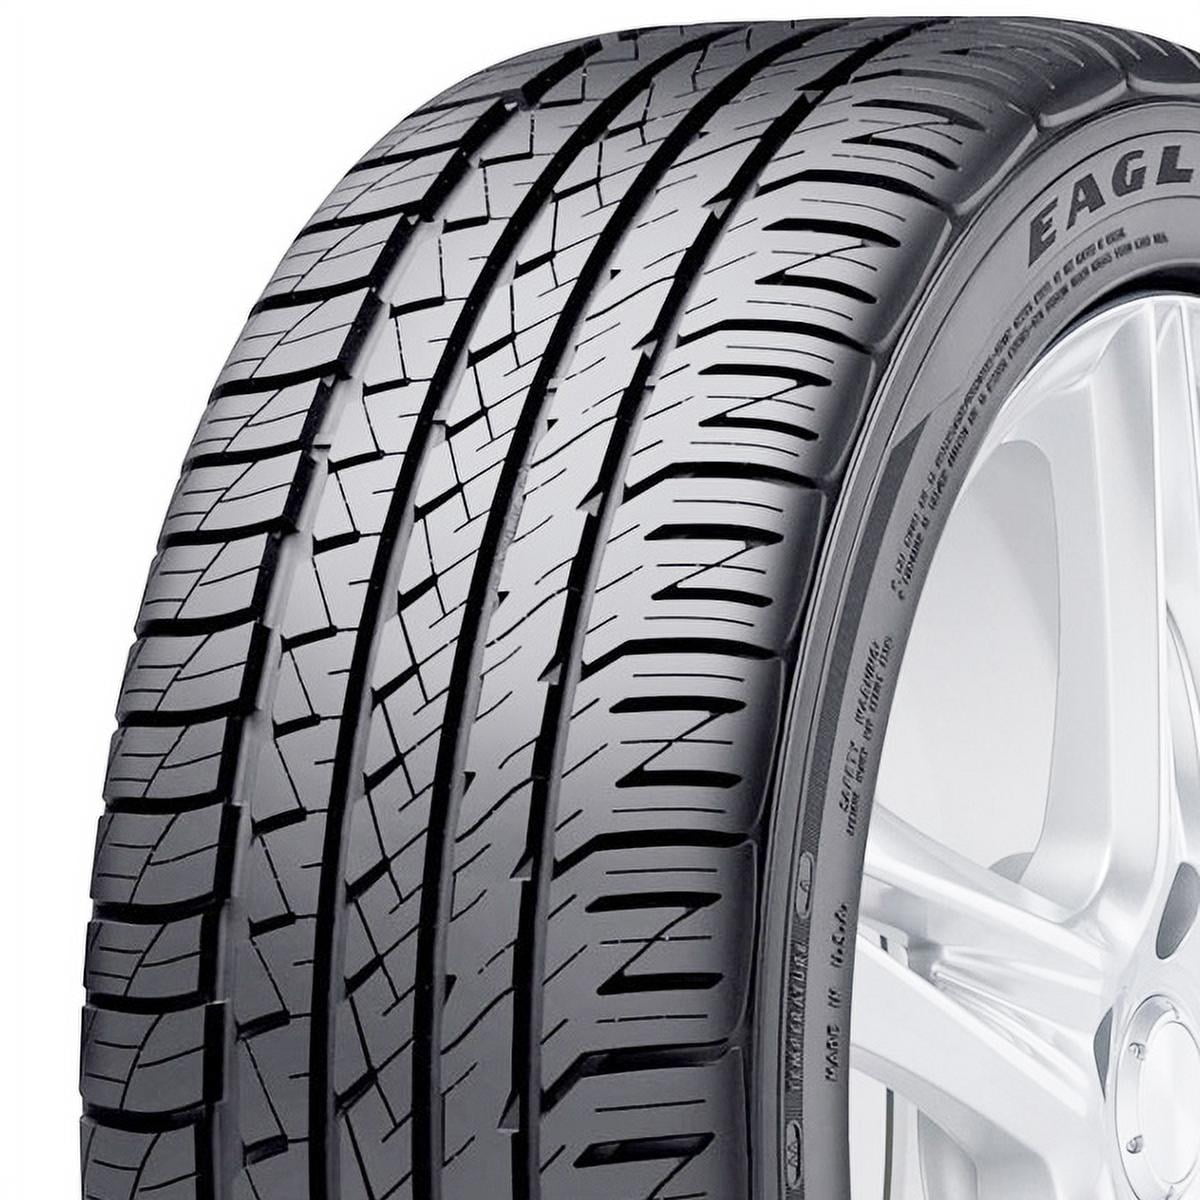 Goodyear Eagle F1 Asymmetric All-Season 245/45R18 96 Y Tire